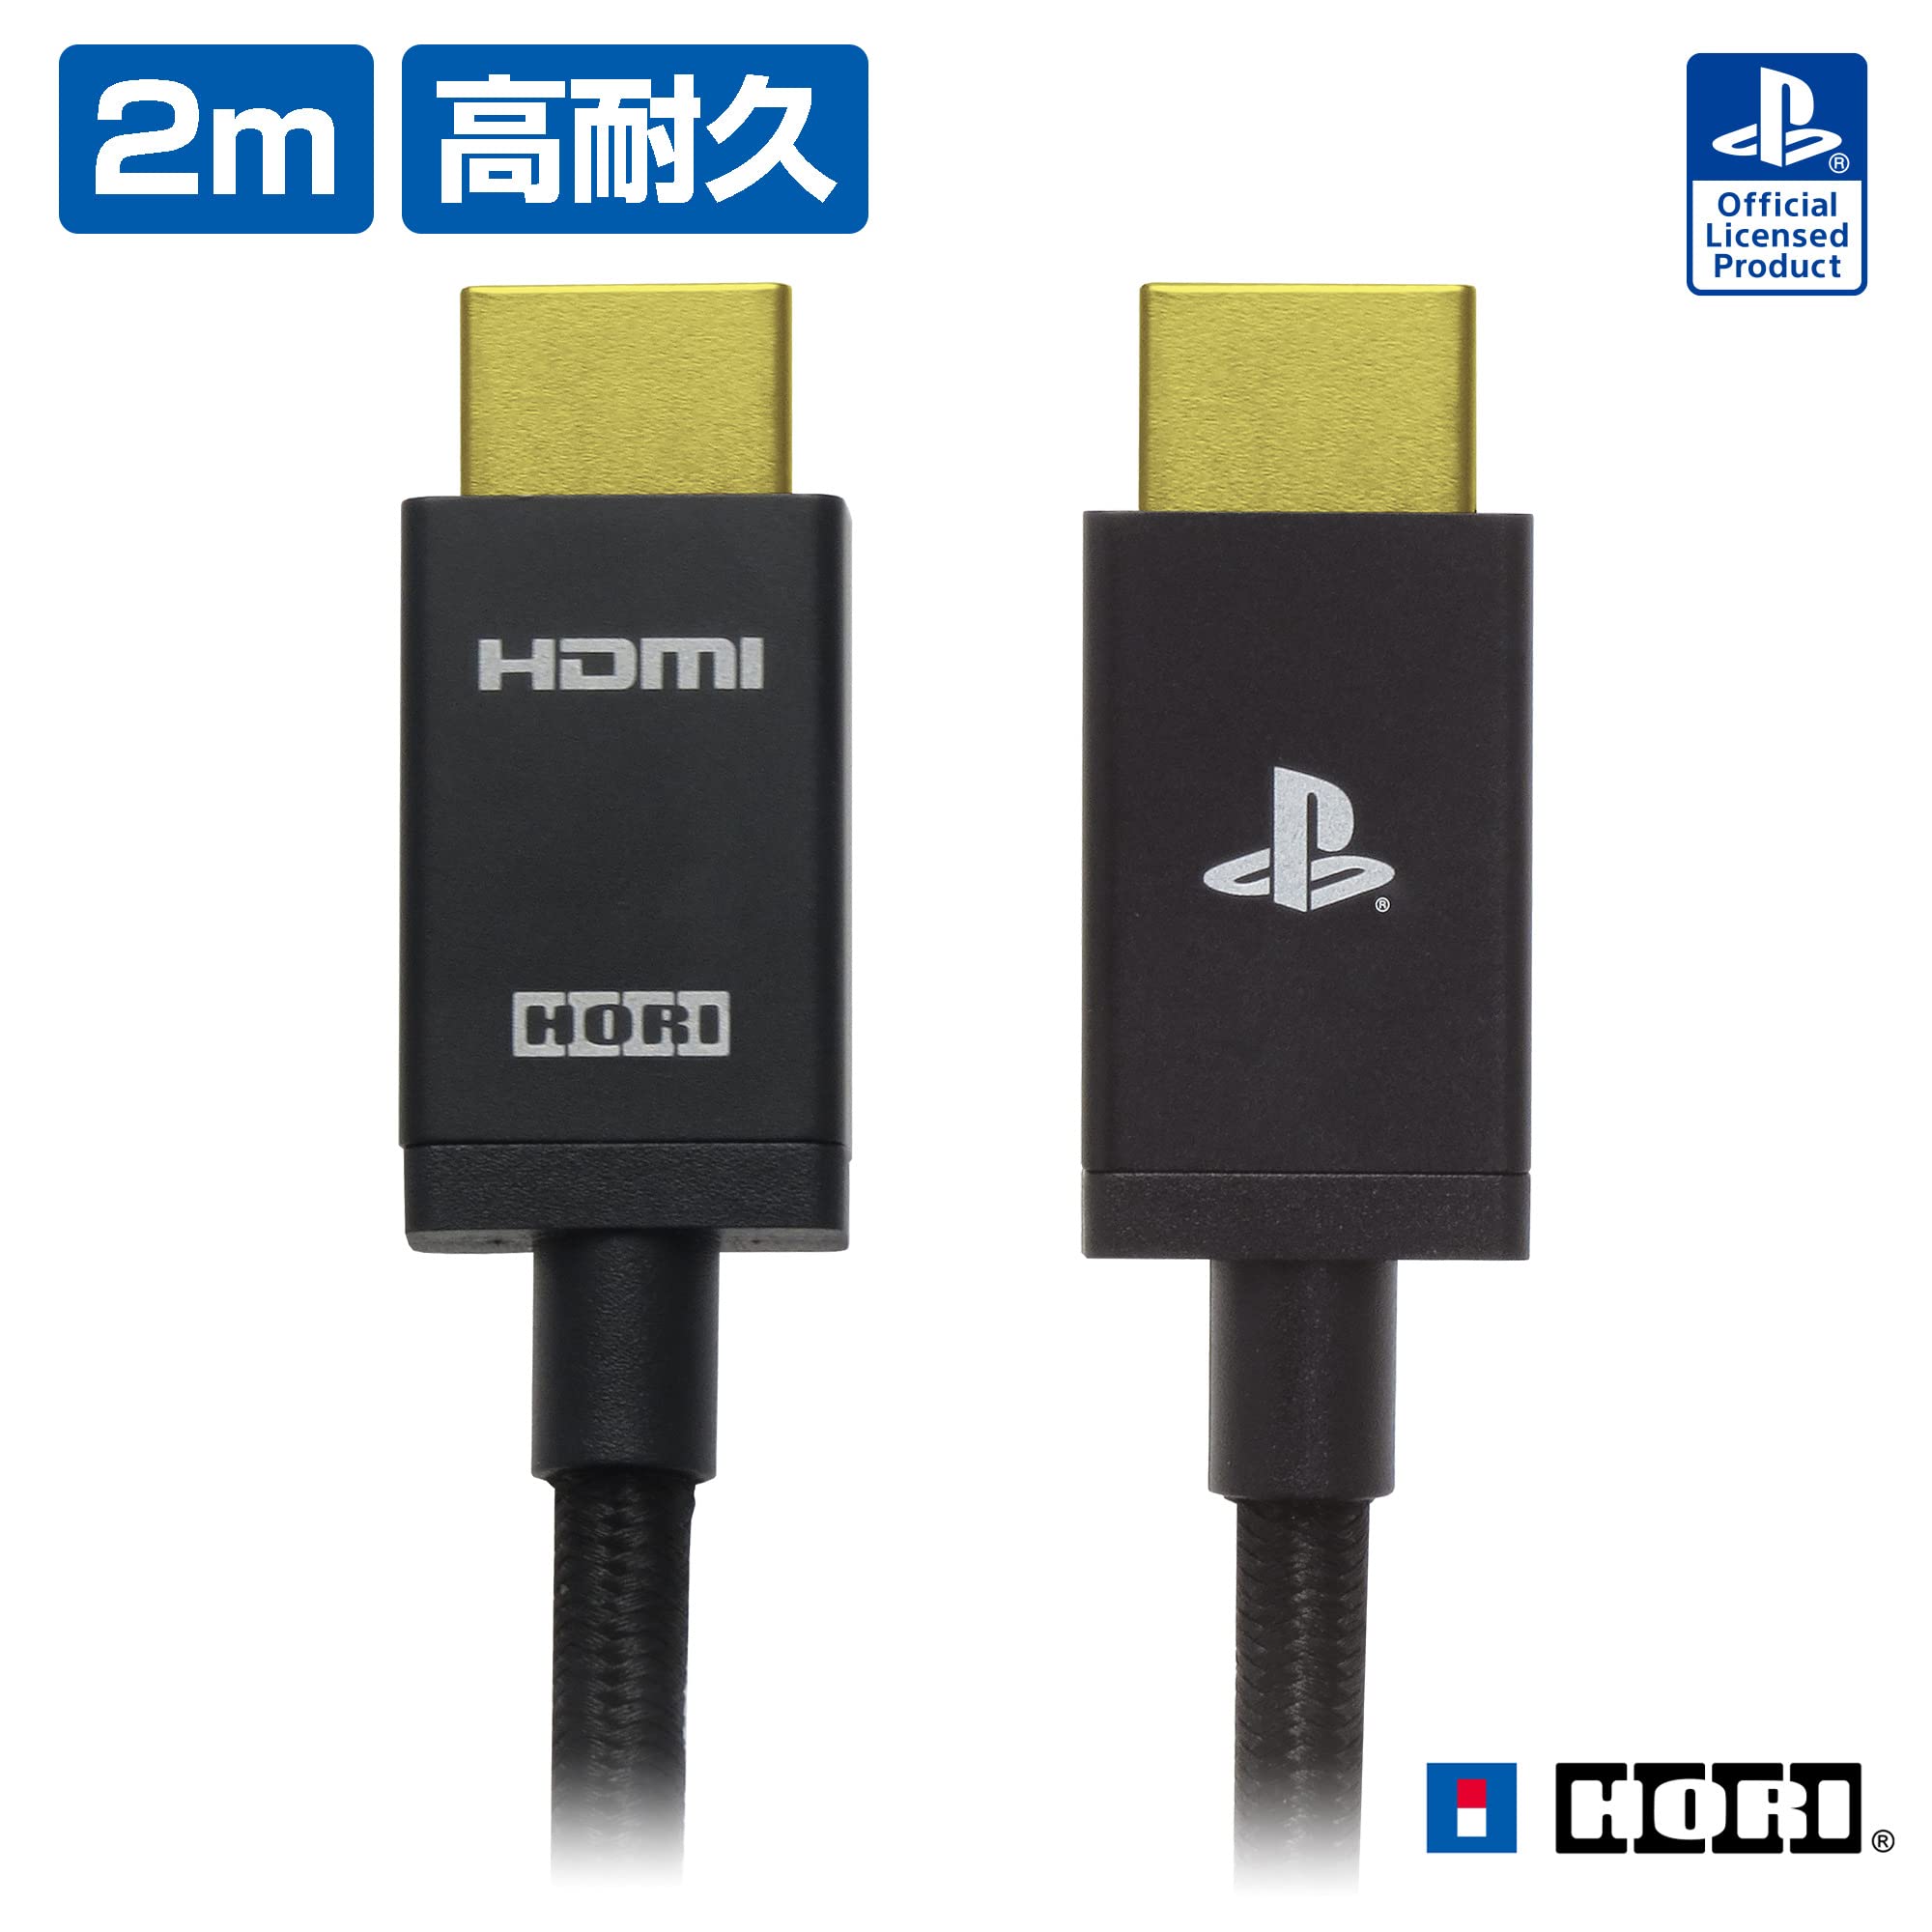 PlayStation5公式ライセンスの8K映像対応 ウルトラハイスピードHDMIケーブル PlayStation5の8K/4K出力、HDRに対応、高画質なゲームプレイが楽しめます。HDMI2.1規格 カテゴリー3 ウルトラハイスピード HDMI ケーブル認証取得ケーブルです。 引っ張り、曲げに強い、ナイロンメッシュ素材ケーブルメタル(アルミ)グリップ、ノイズに強い3重シールド構造を採用。 対応機種PlayStation5、PlayStation4、HDMI対応機器 ケーブル長:約2m